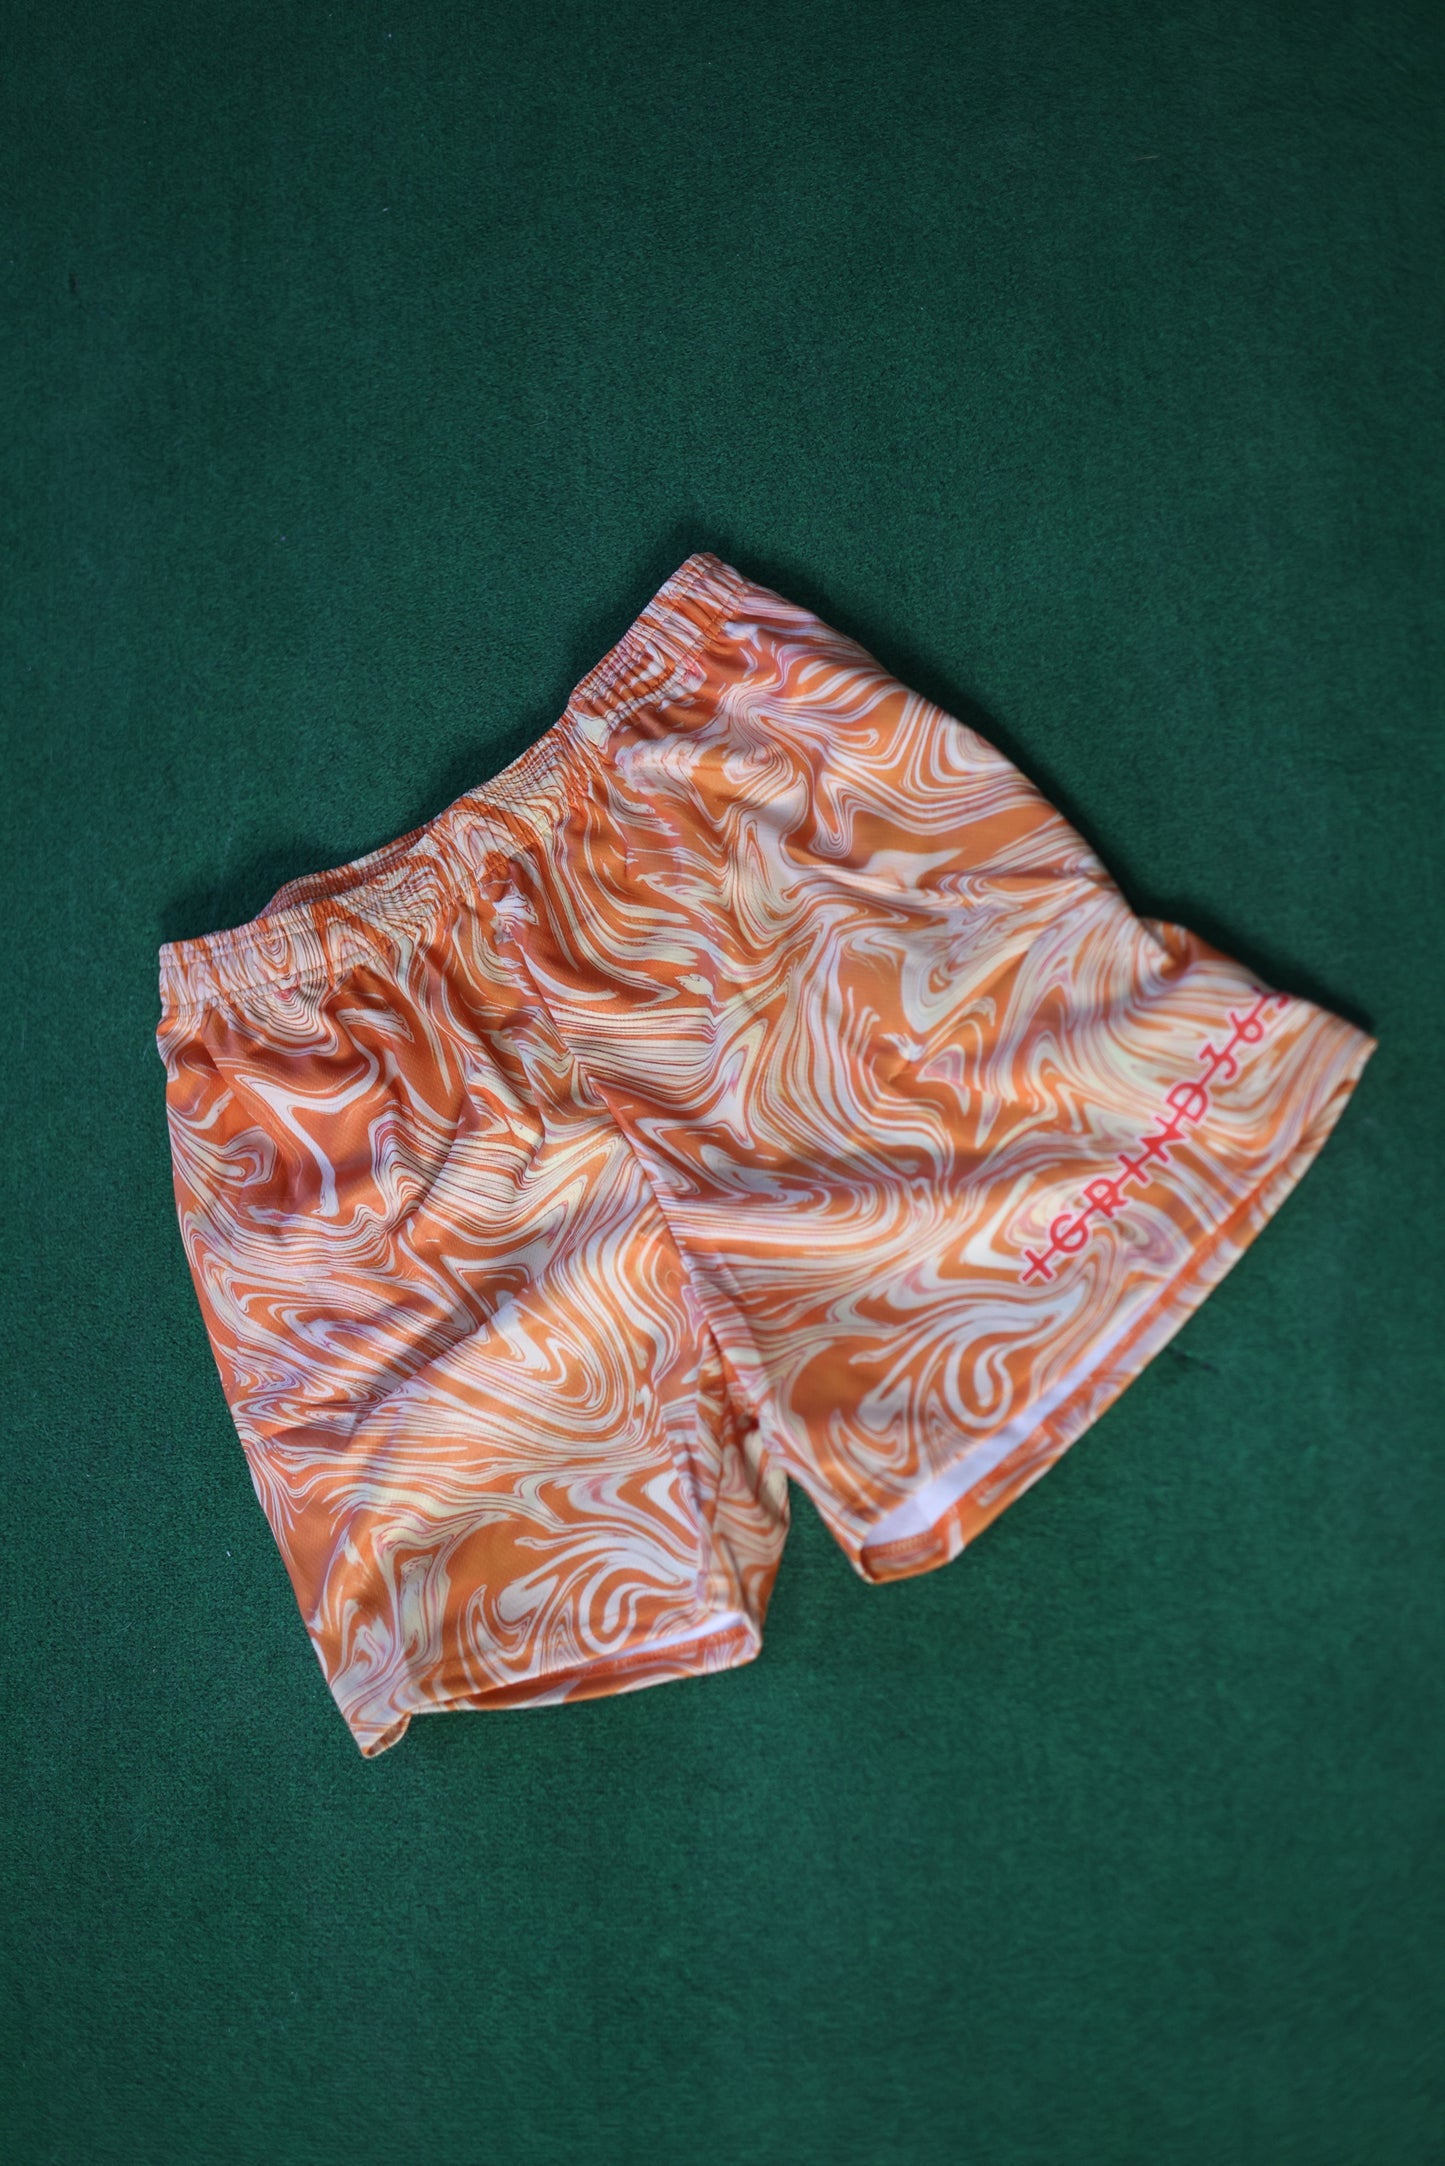 Orange shorts